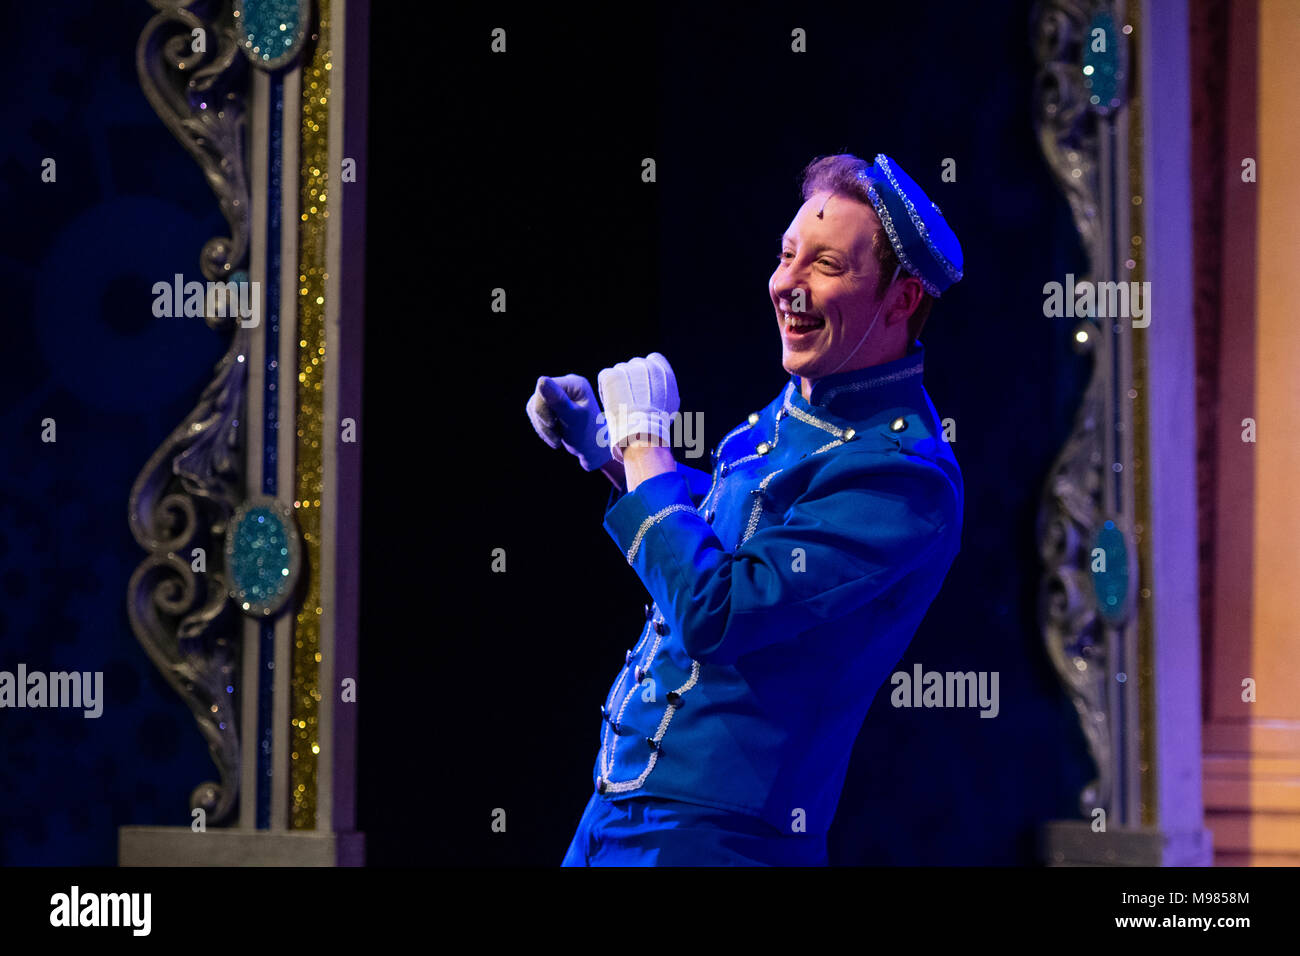 Schauspieler in 'Tasten' Kostüm auf der Bühne in einem Laienhaften dramatische Unternehmen Produktion der klassischen Pantomime Aschenputtel, in Aberystwyth Arts Centre, 2018, UK Stockfoto